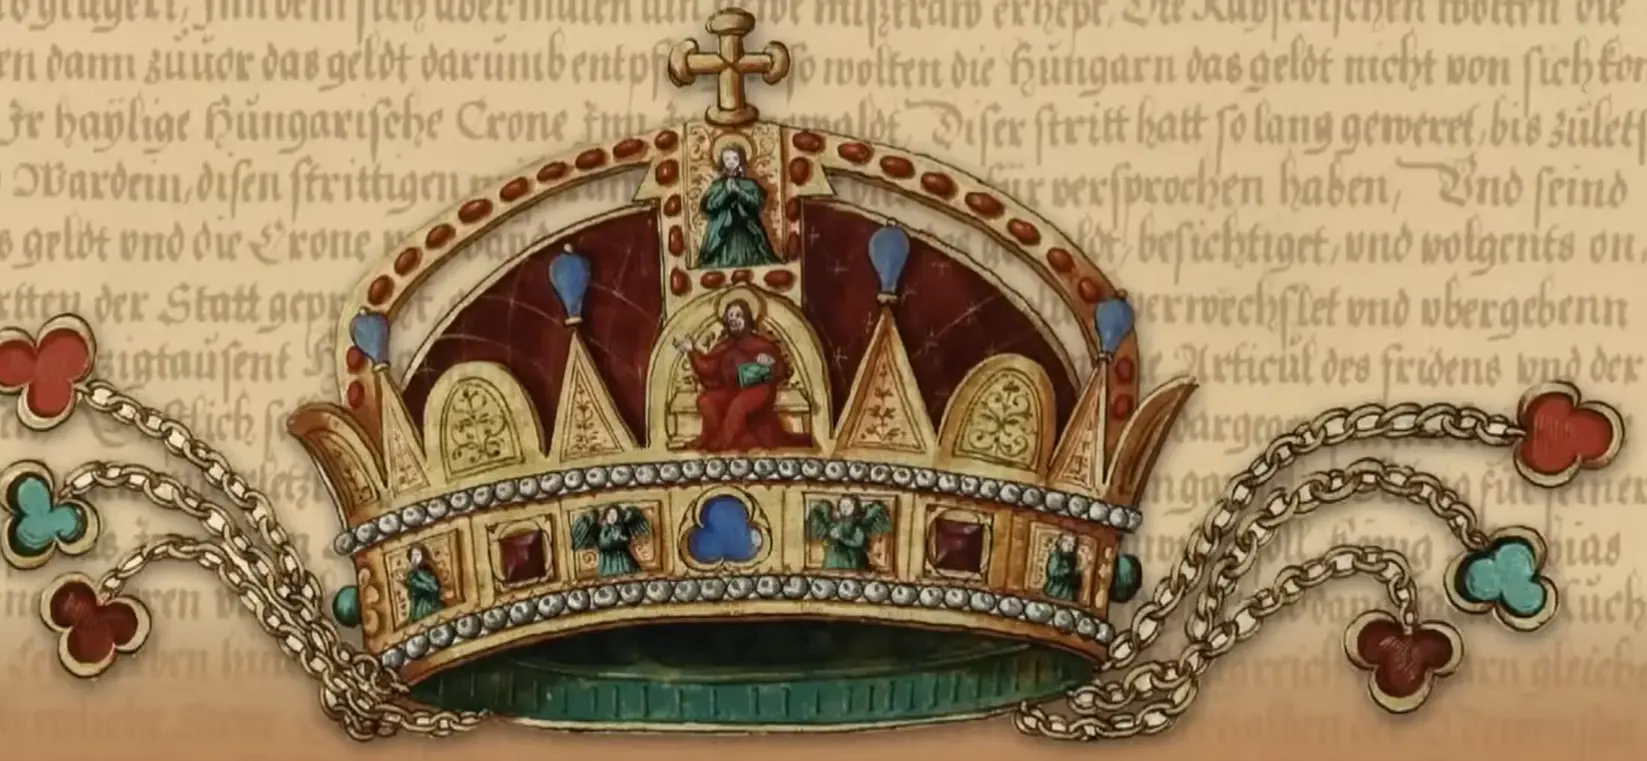 Primera imagen de la Santa Corona de Hungría encontrada en un códice medieval alemán